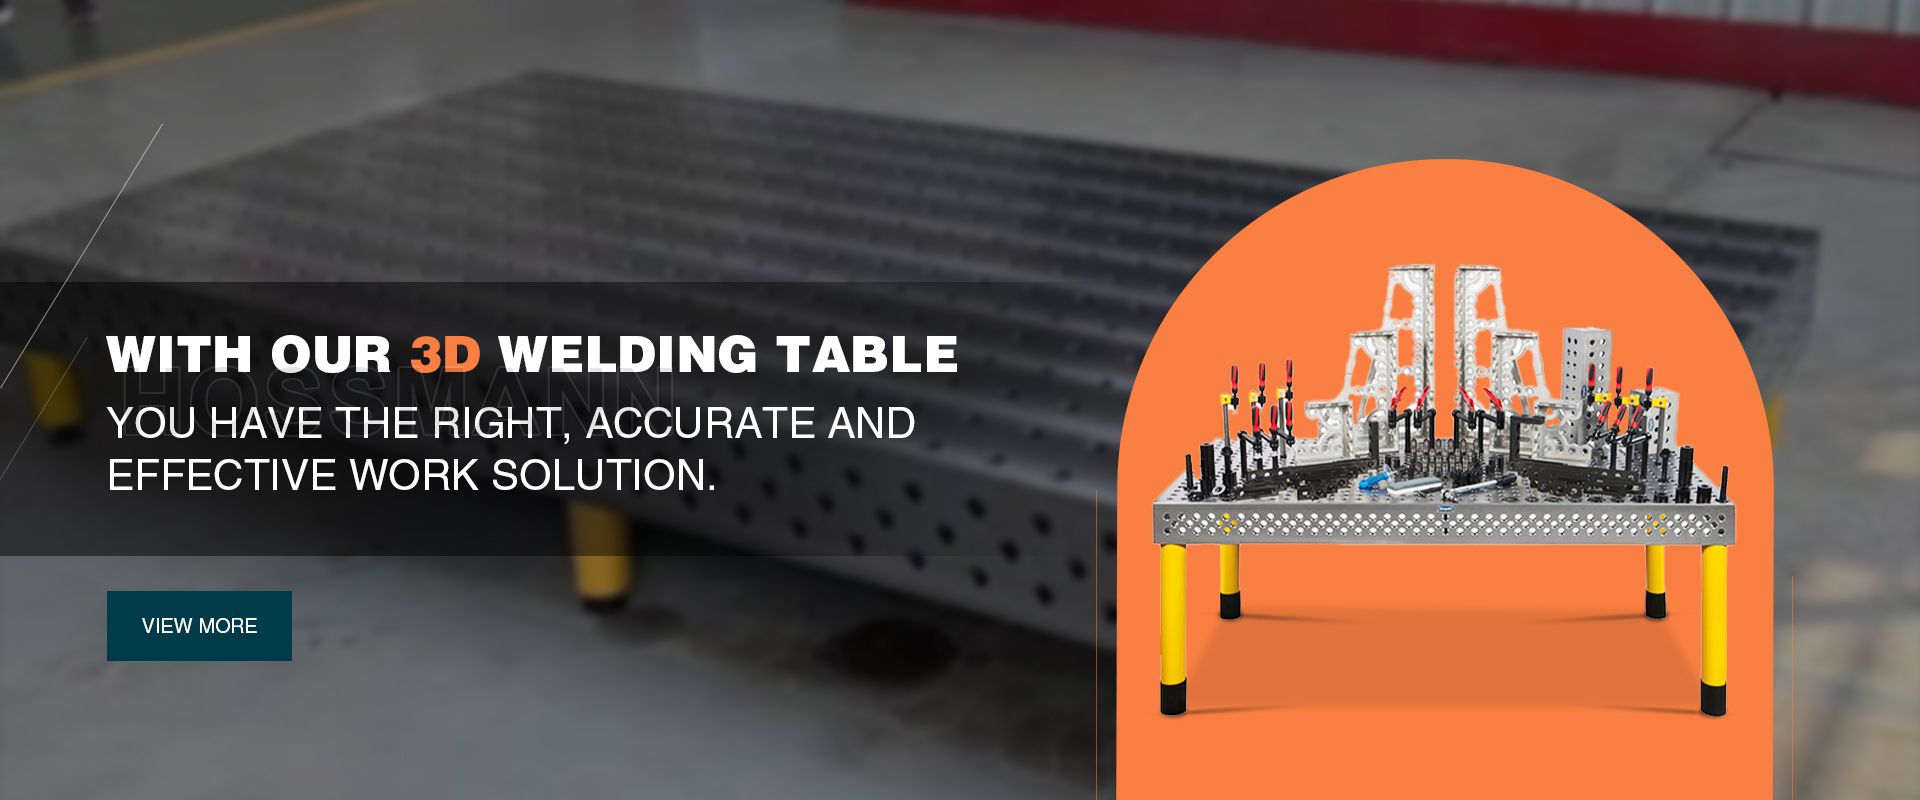 3D Welding Table For Industrial Welding